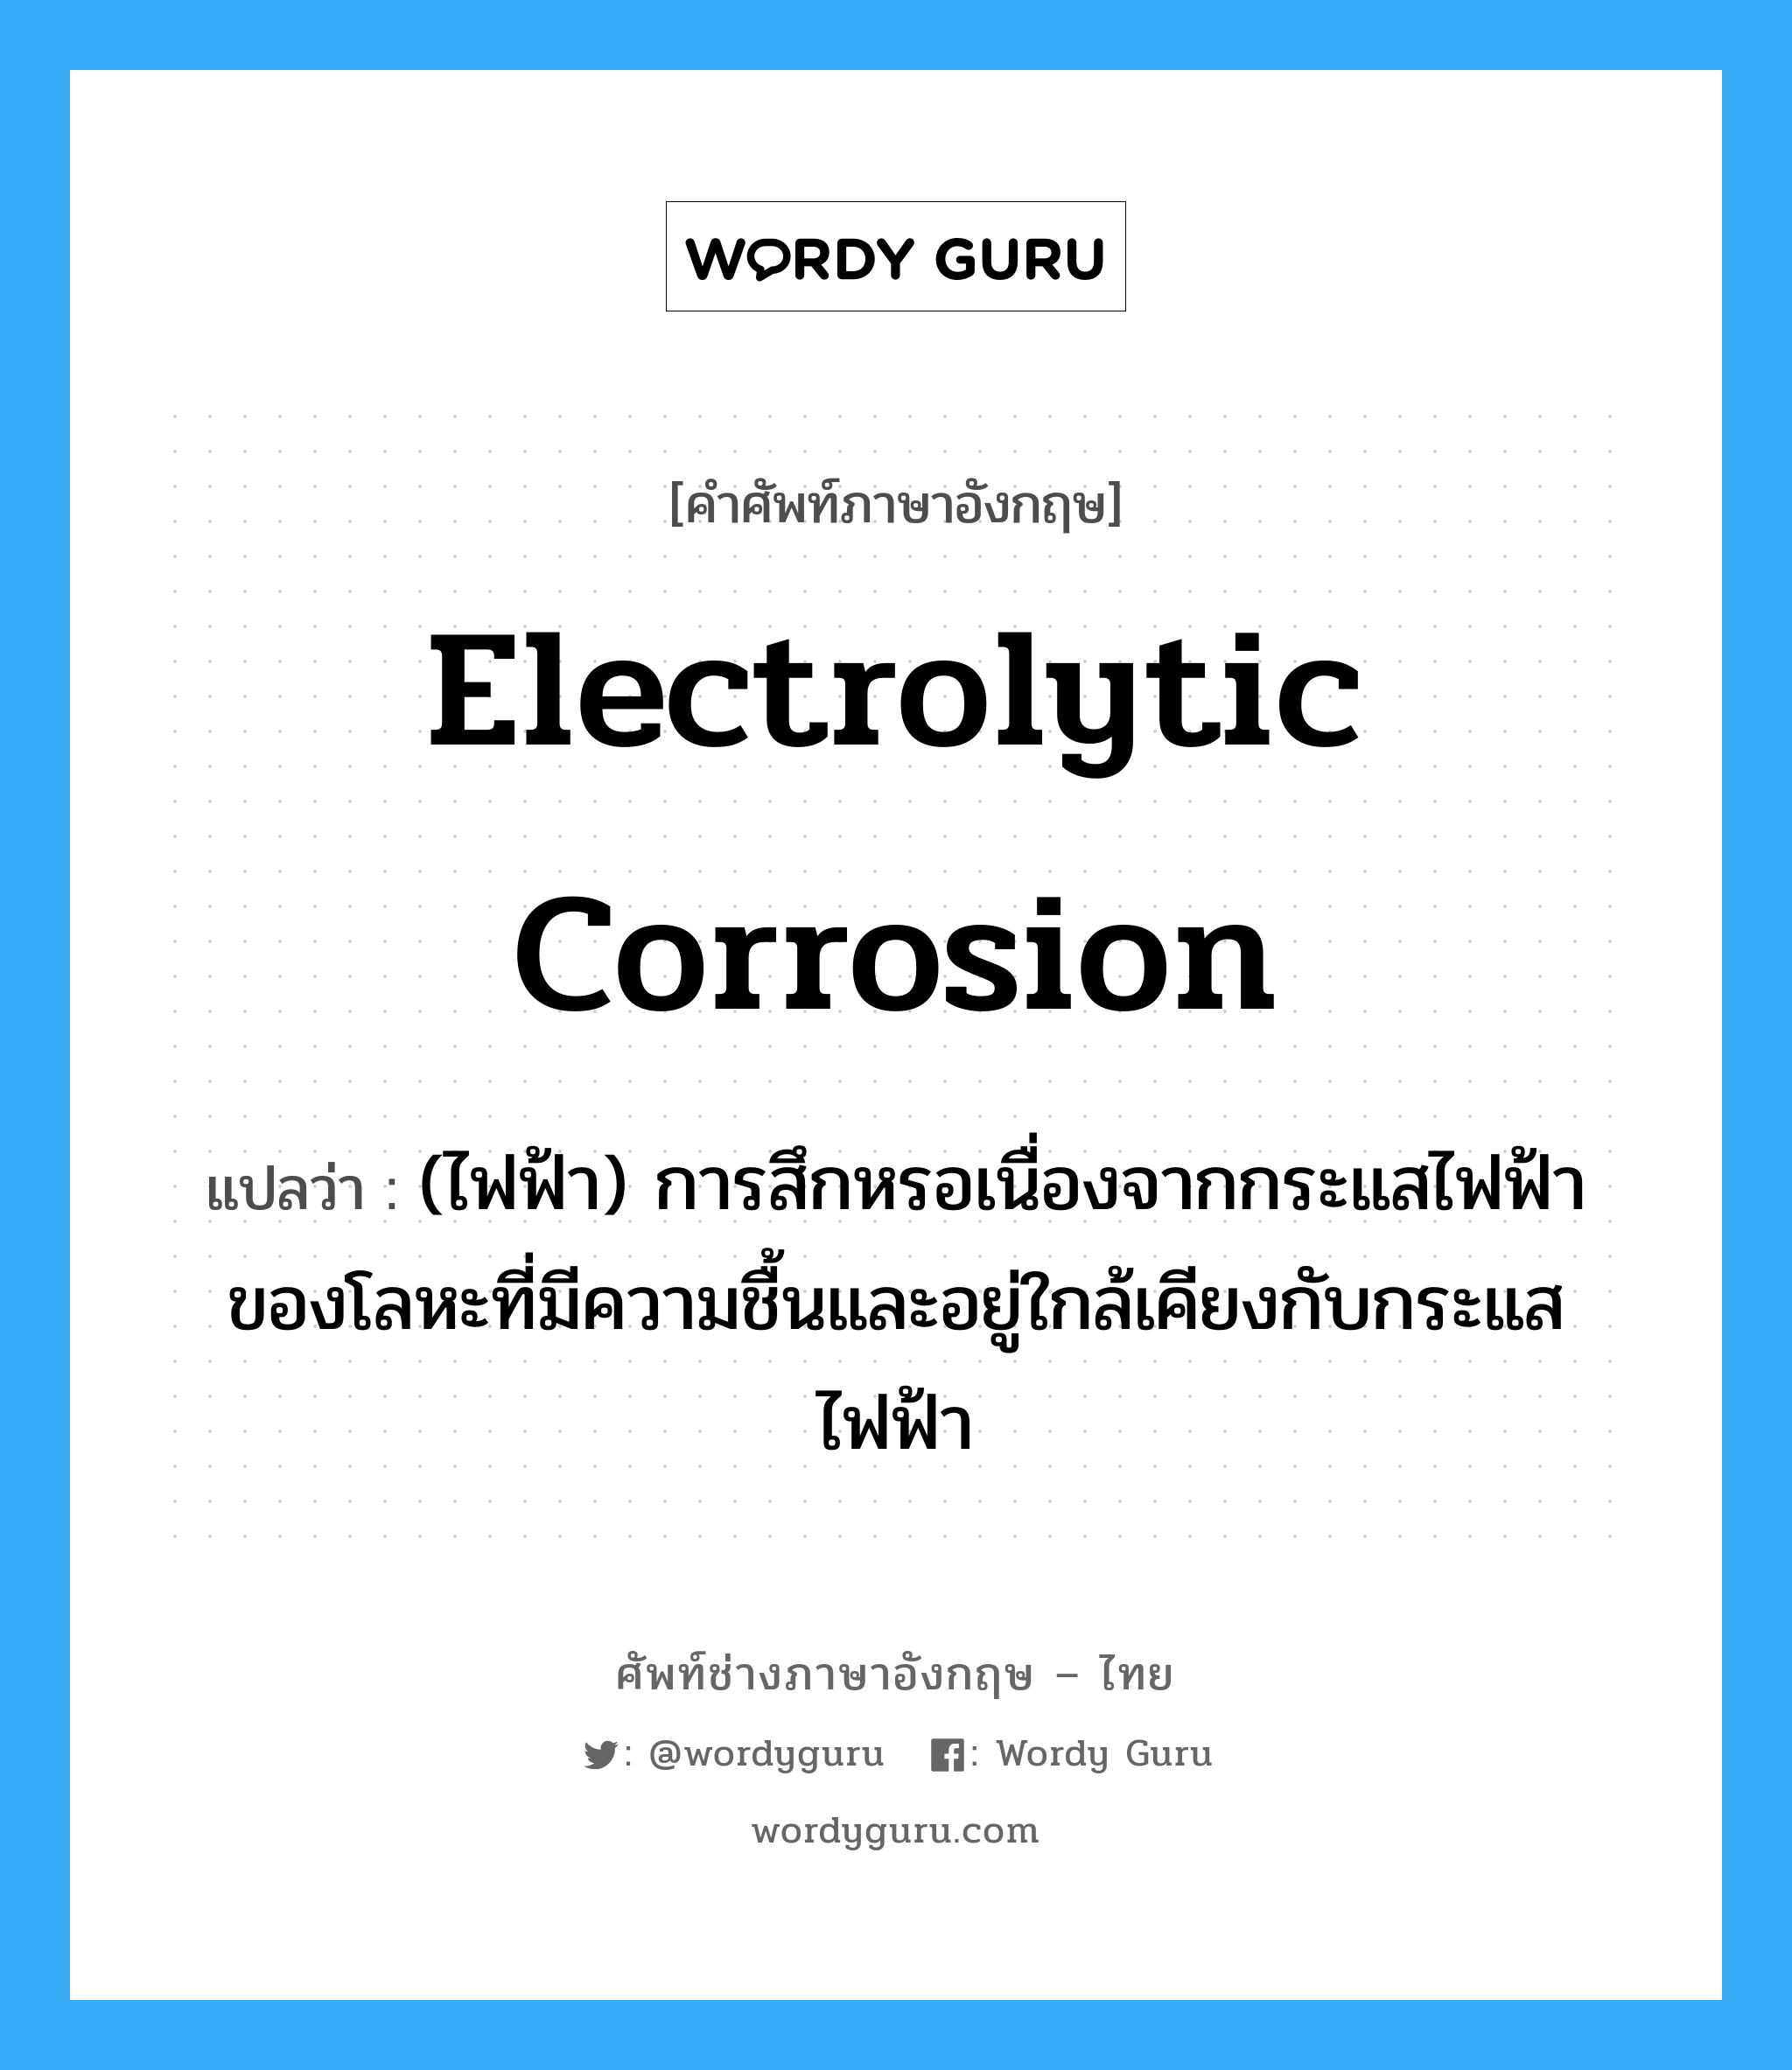 electrolytic corrosion แปลว่า?, คำศัพท์ช่างภาษาอังกฤษ - ไทย electrolytic corrosion คำศัพท์ภาษาอังกฤษ electrolytic corrosion แปลว่า (ไฟฟ้า) การสึกหรอเนื่องจากกระแสไฟฟ้าของโลหะที่มีความชื้นและอยู่ใกล้เคียงกับกระแสไฟฟ้า